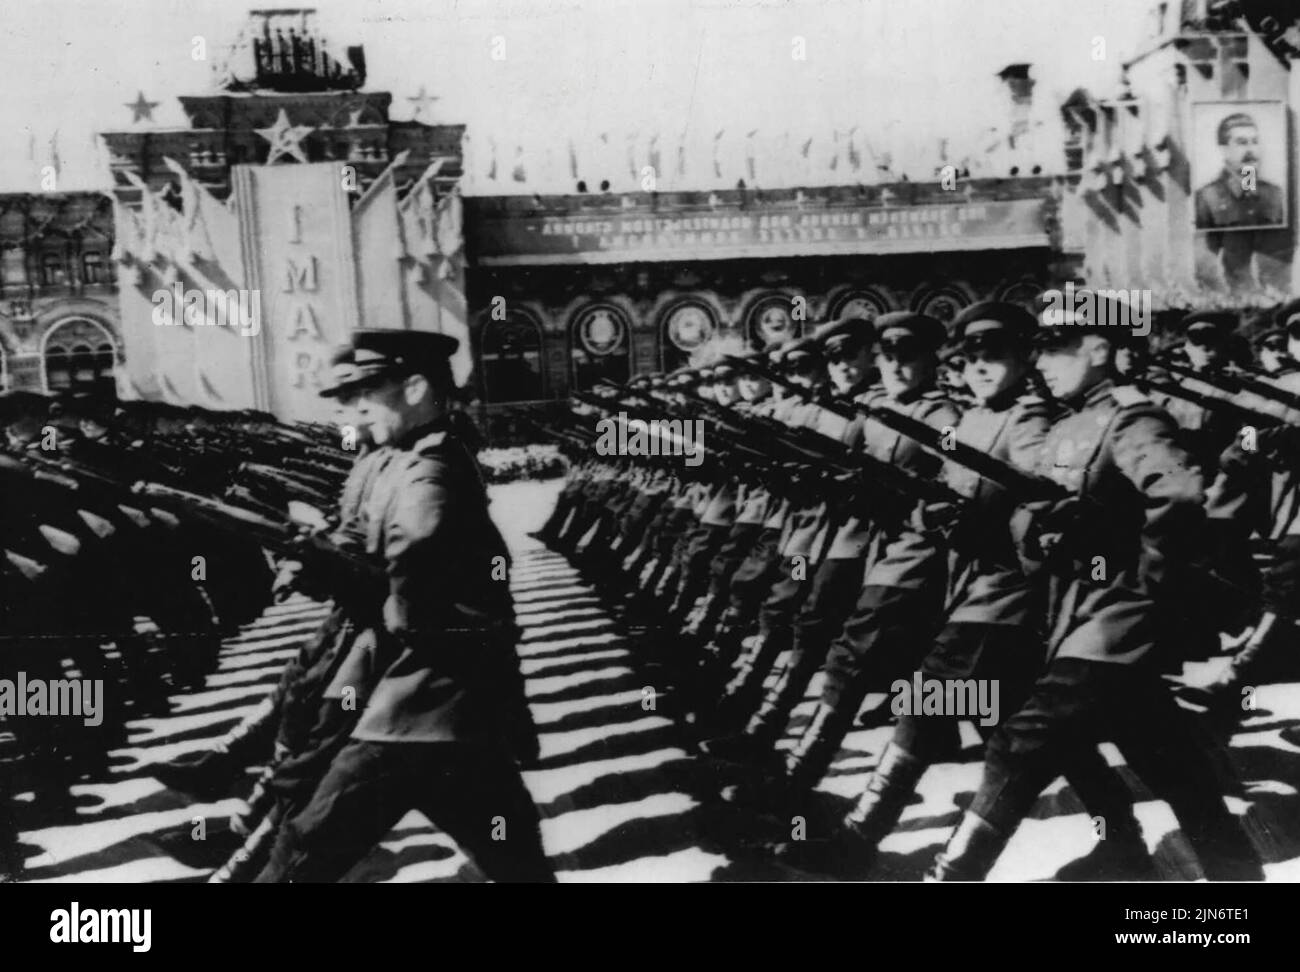 Maggio Day in Mosca-truppe Parade -- questa foto radiofonica da Mosca, rilasciato da Sovphoto, mostra, secondo la Caption che lo accompagna; il giorno di maggio sfilata di truppe della guarnigione di Mosca sulla Piazza Rossa. Maggio 02, 1950. Foto Stock